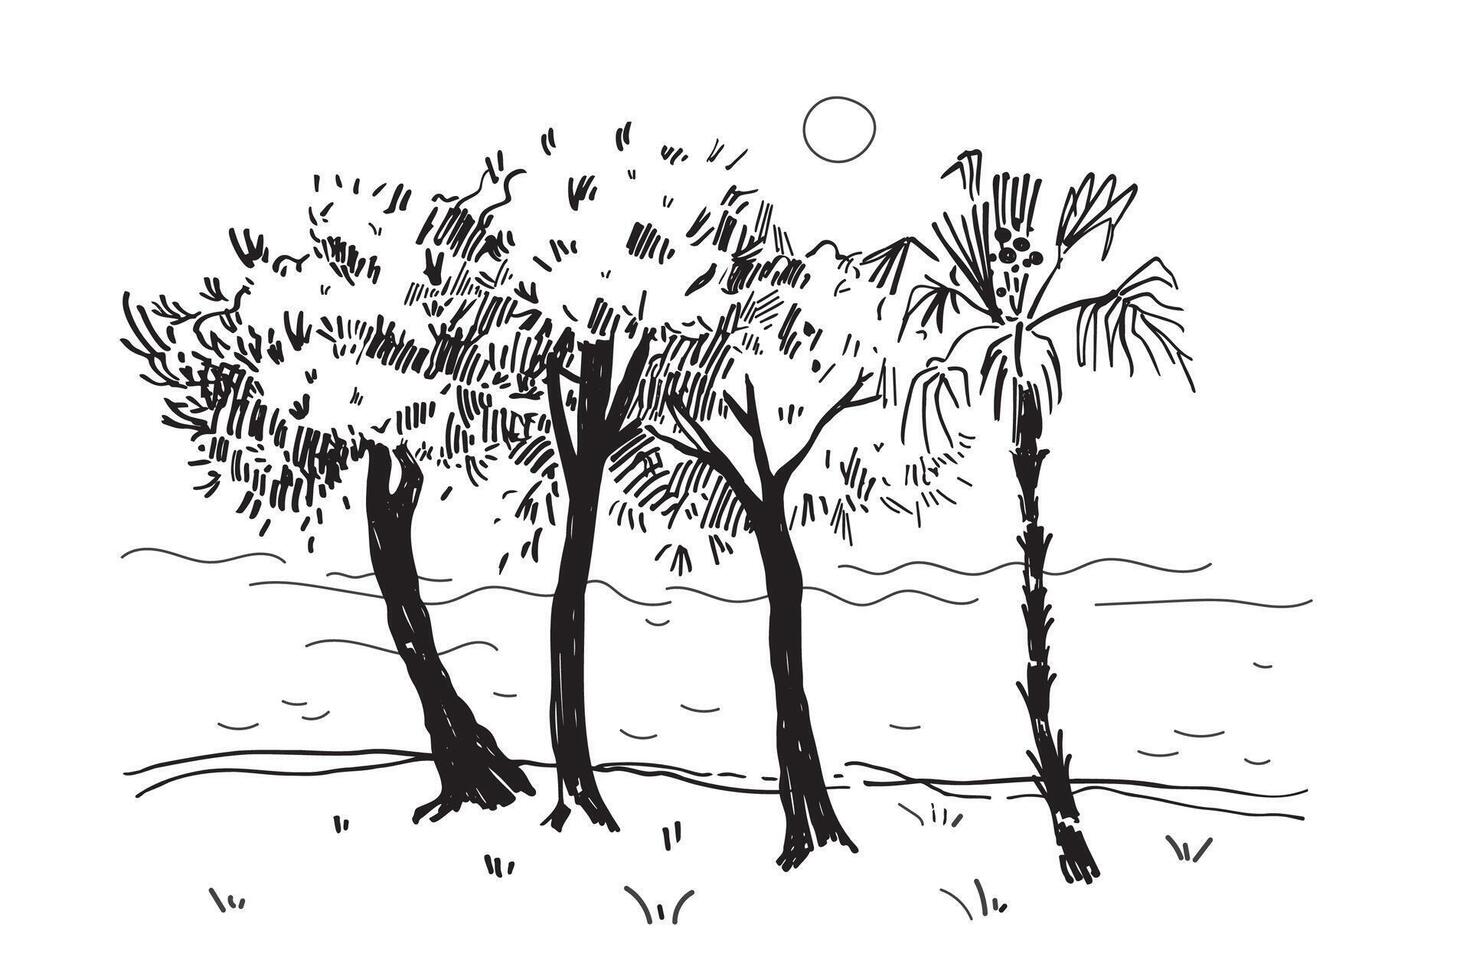 panorama- se av bok träd och lugna hav, bläck skiss hand dragen illustration av havet med handflatan, träd, vatten, Sol, marin motiv. abstrakt kust landskap, linje konst. resa, natur semester vektor